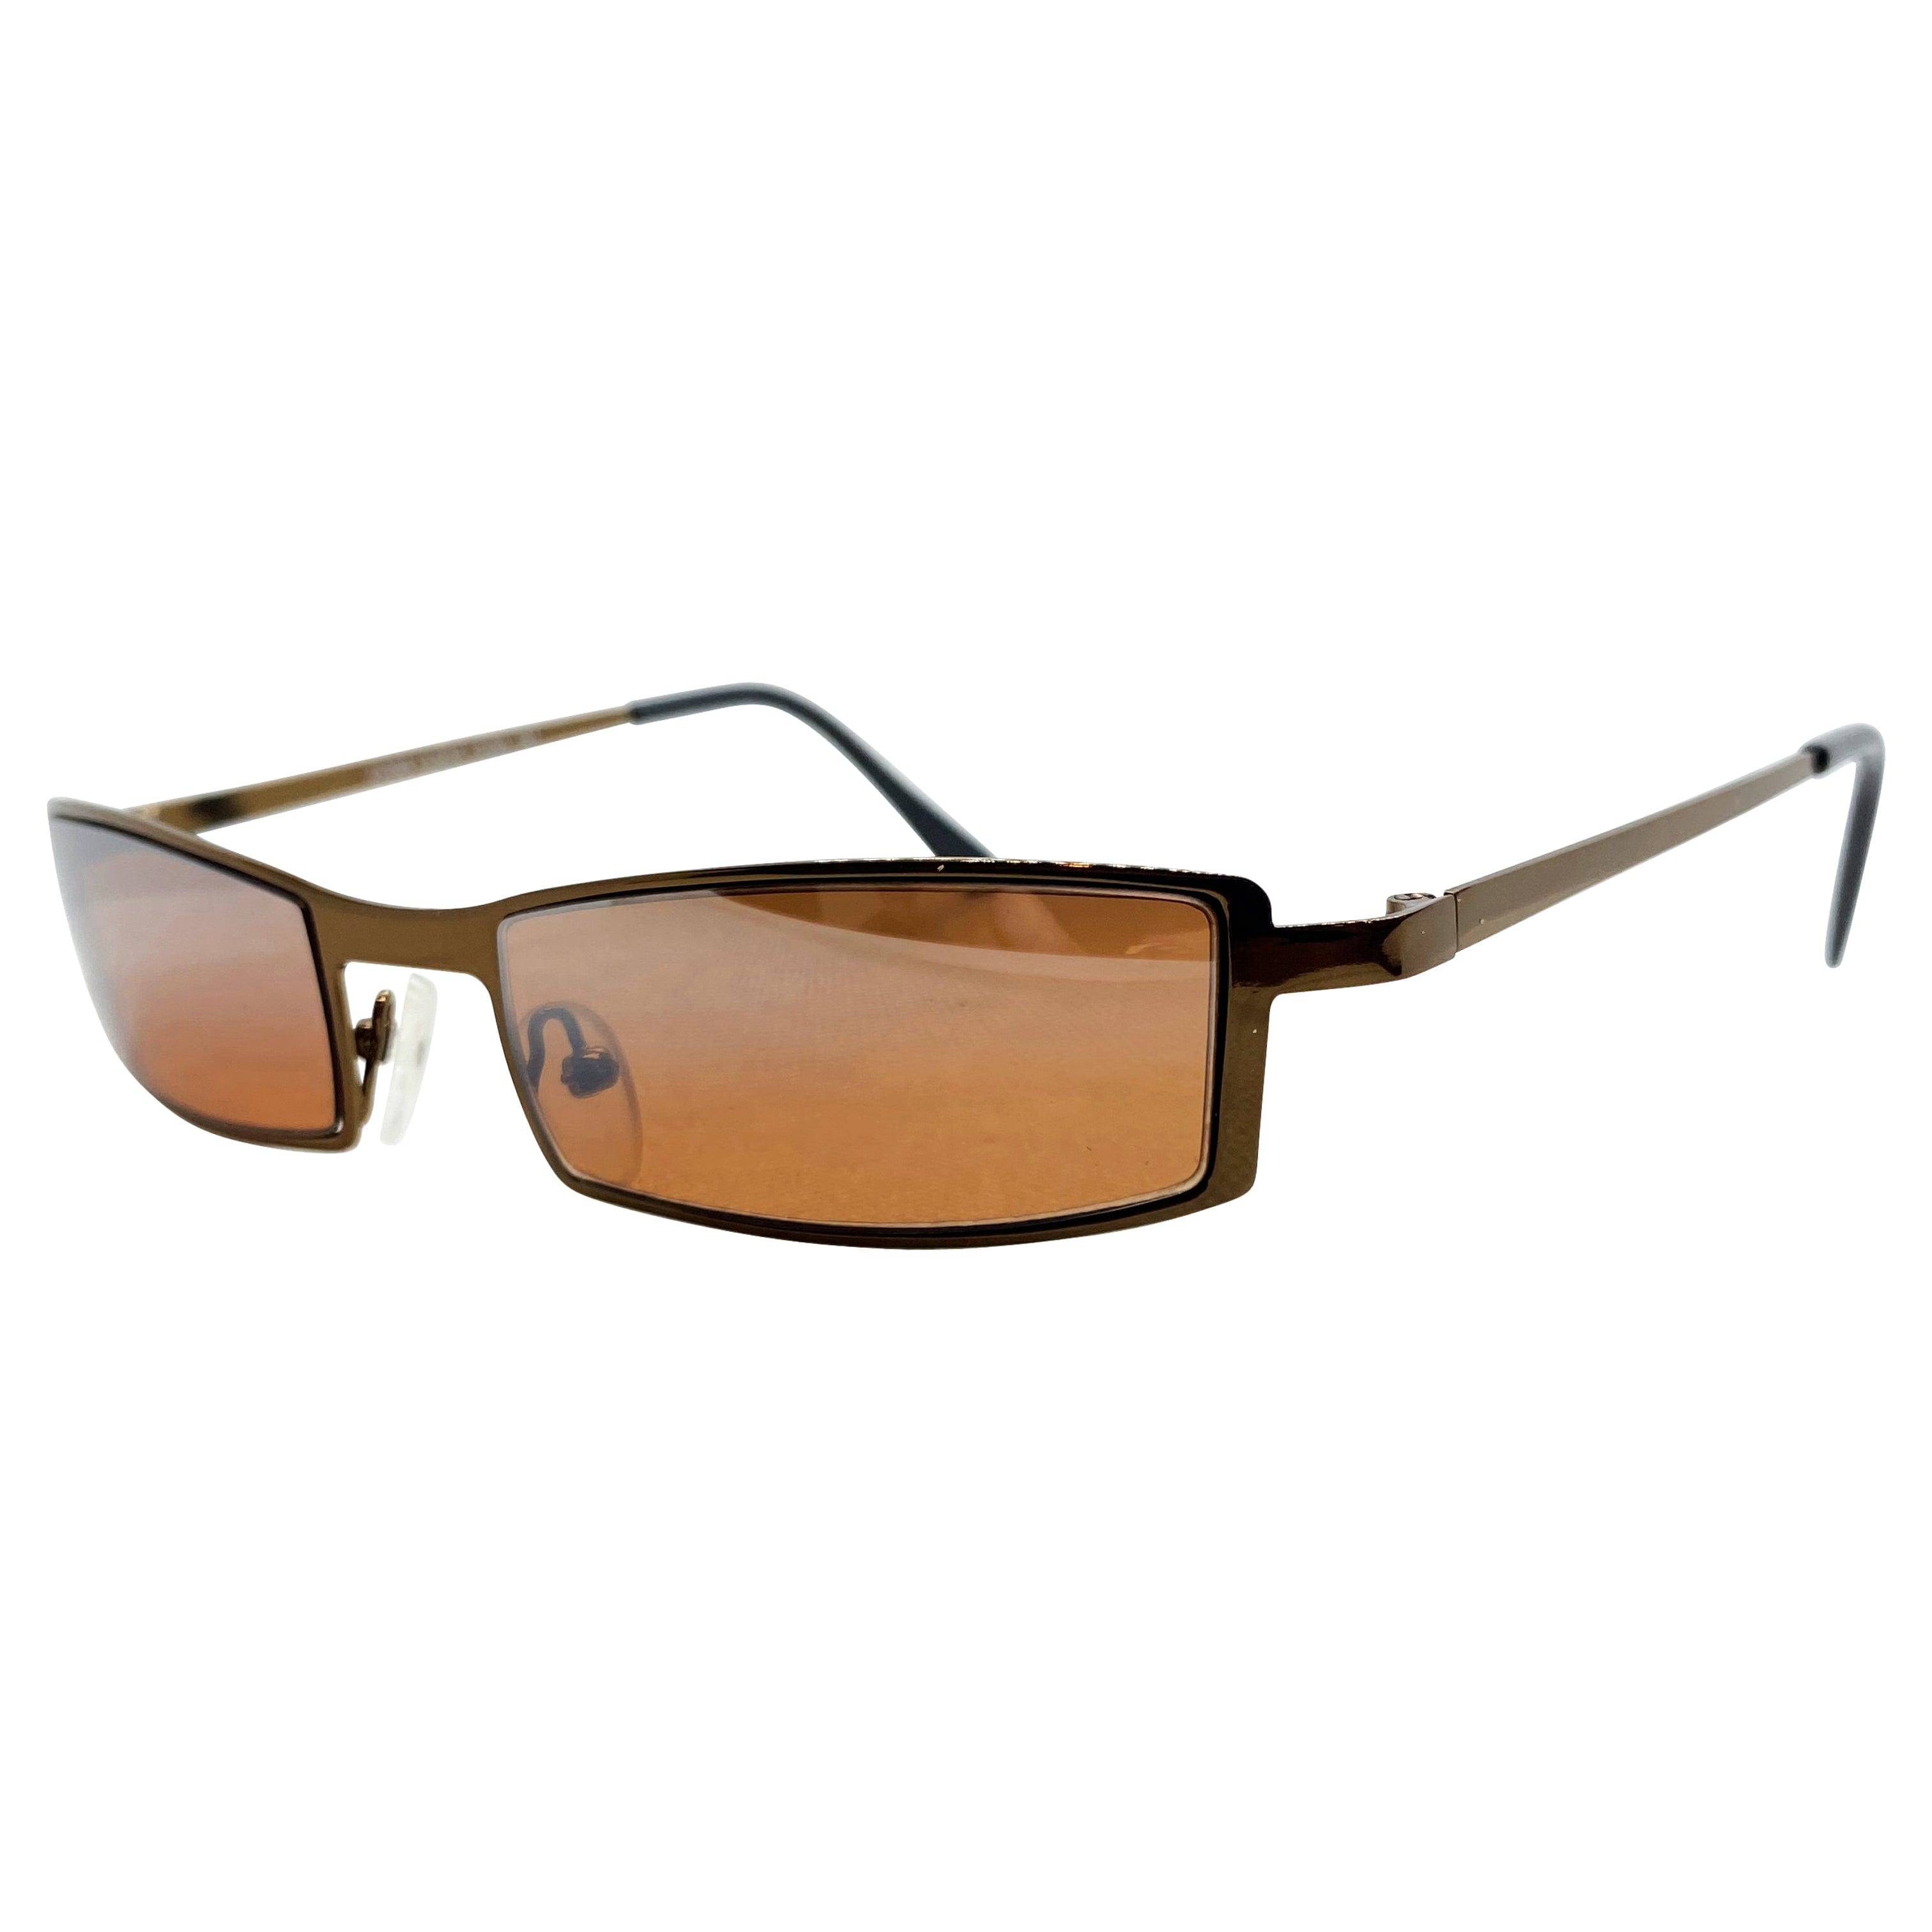 TITO Copper/Copper Sunglasses | Blue-Blocker | Day Driving